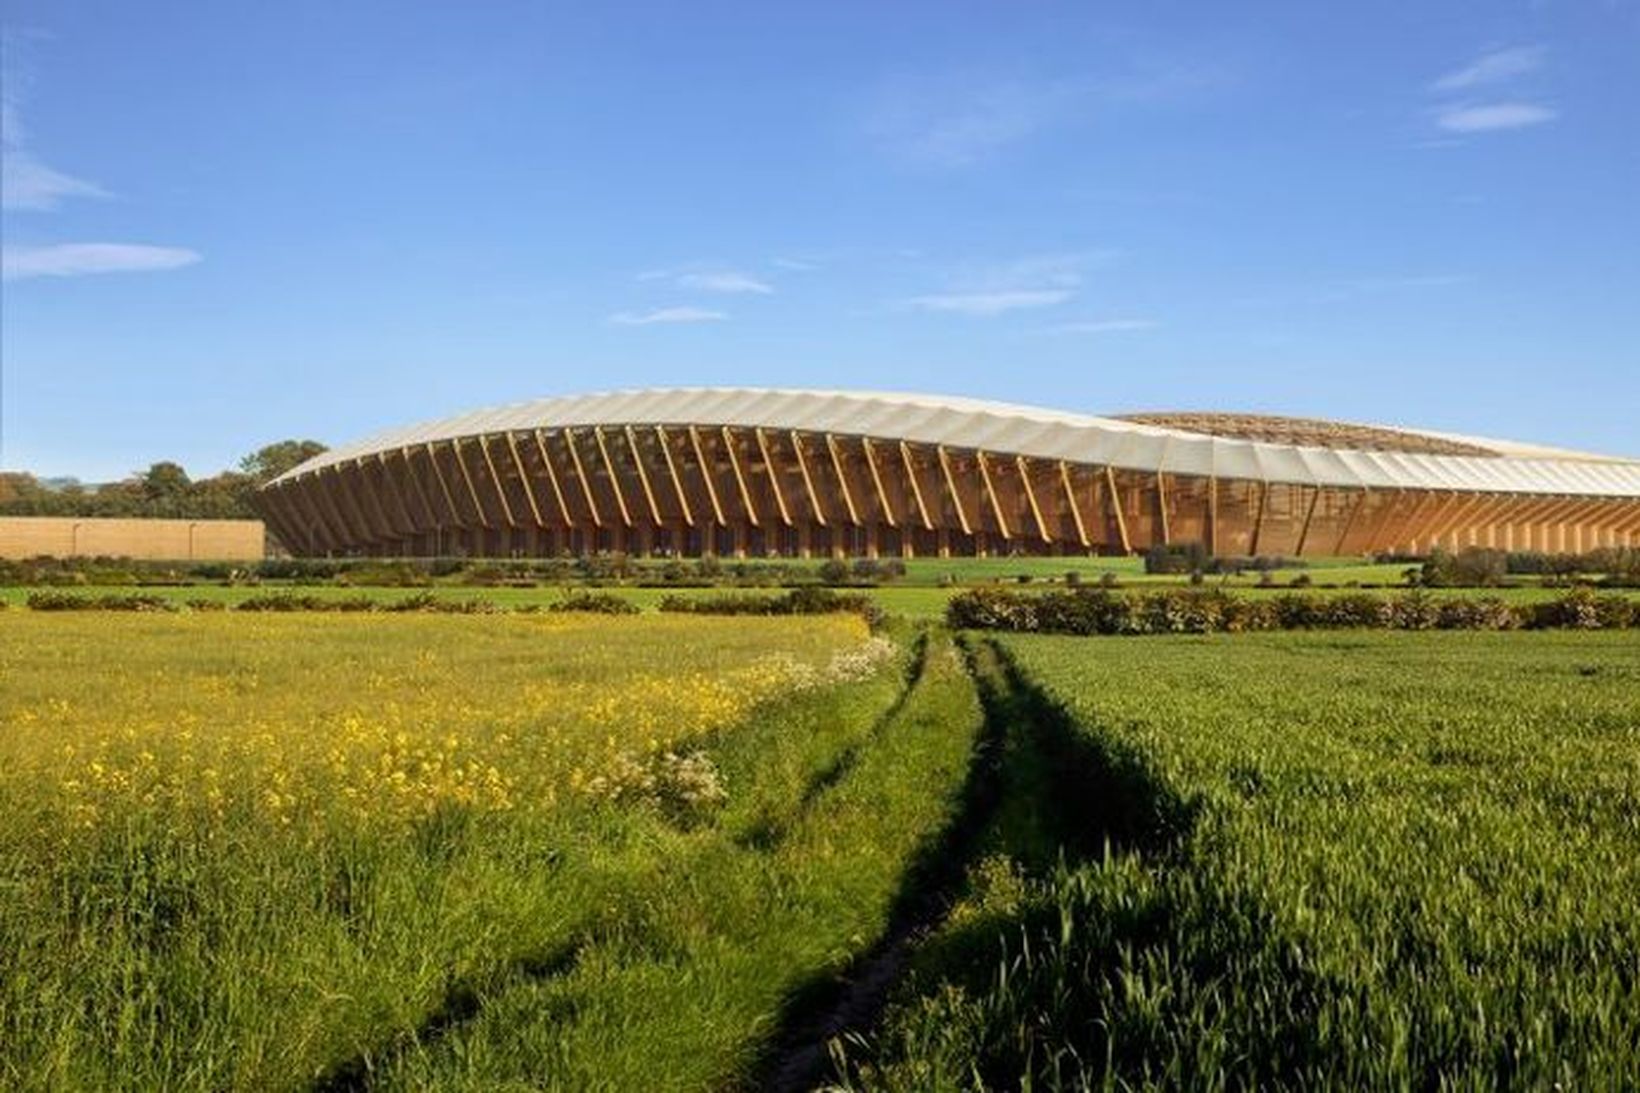 Arkitektastofa írask-breska arkitektsins Zaha Hadid hannaði völlinn.